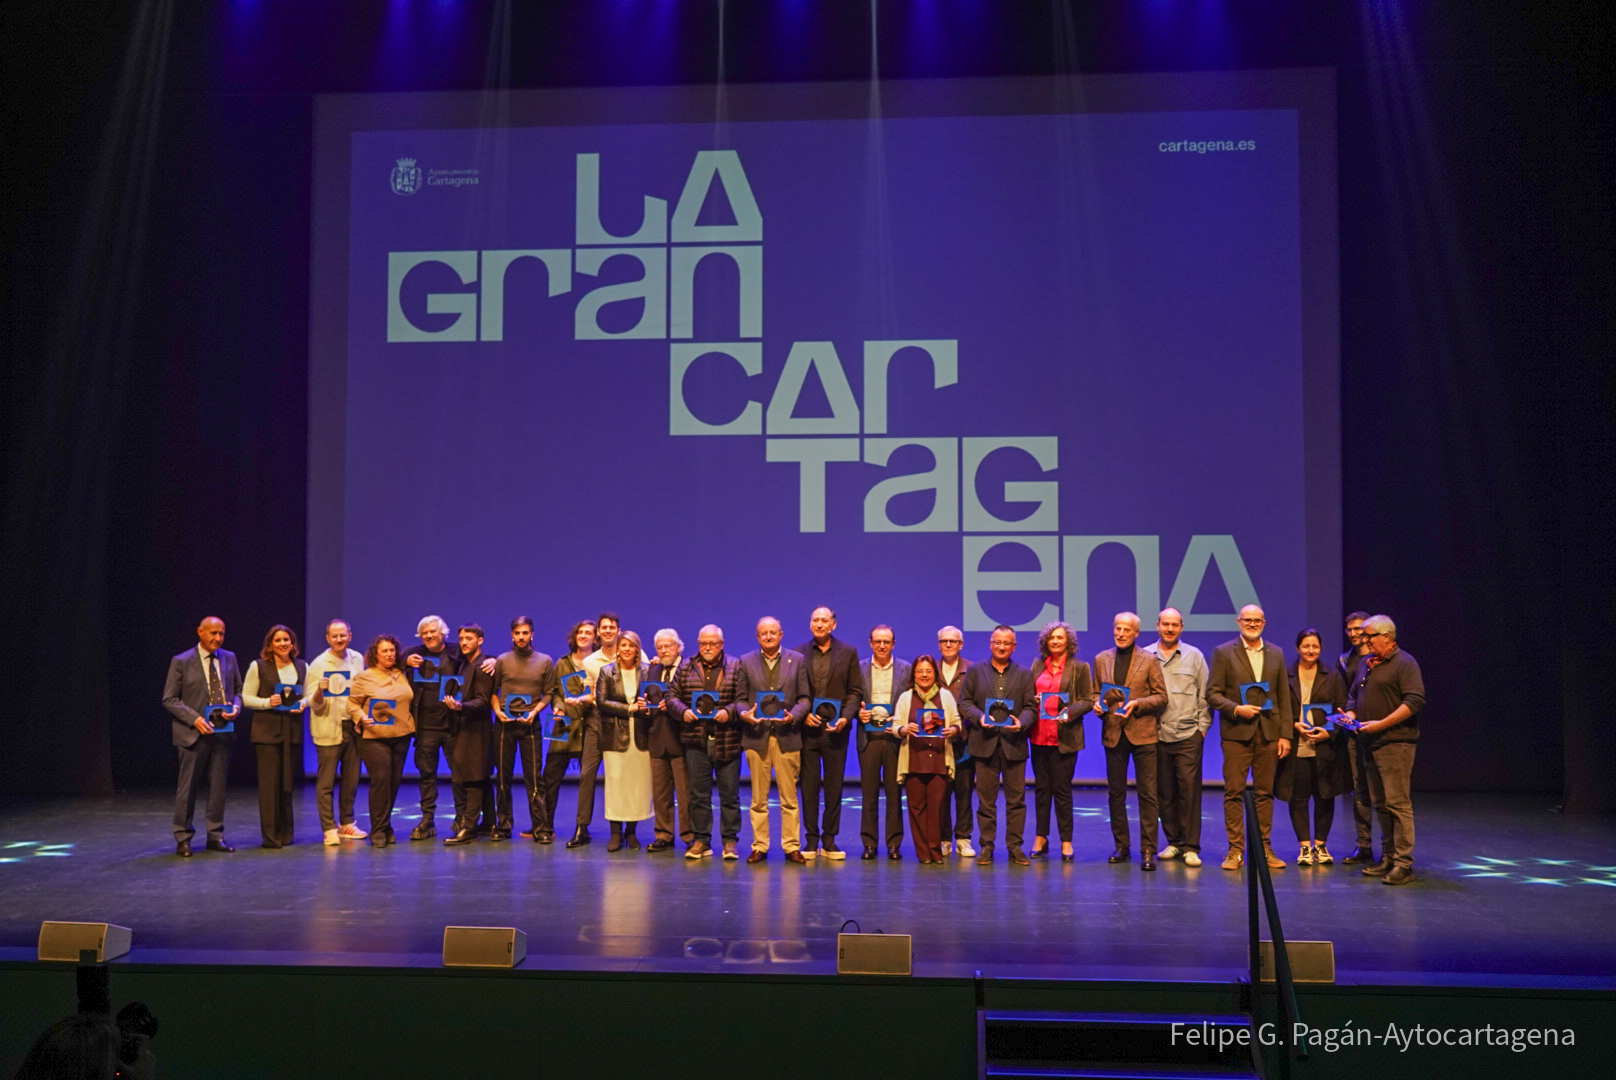 Gala de presentación de la nueva marca Embajadores y la nueva identidad visual La Gran Cartagena